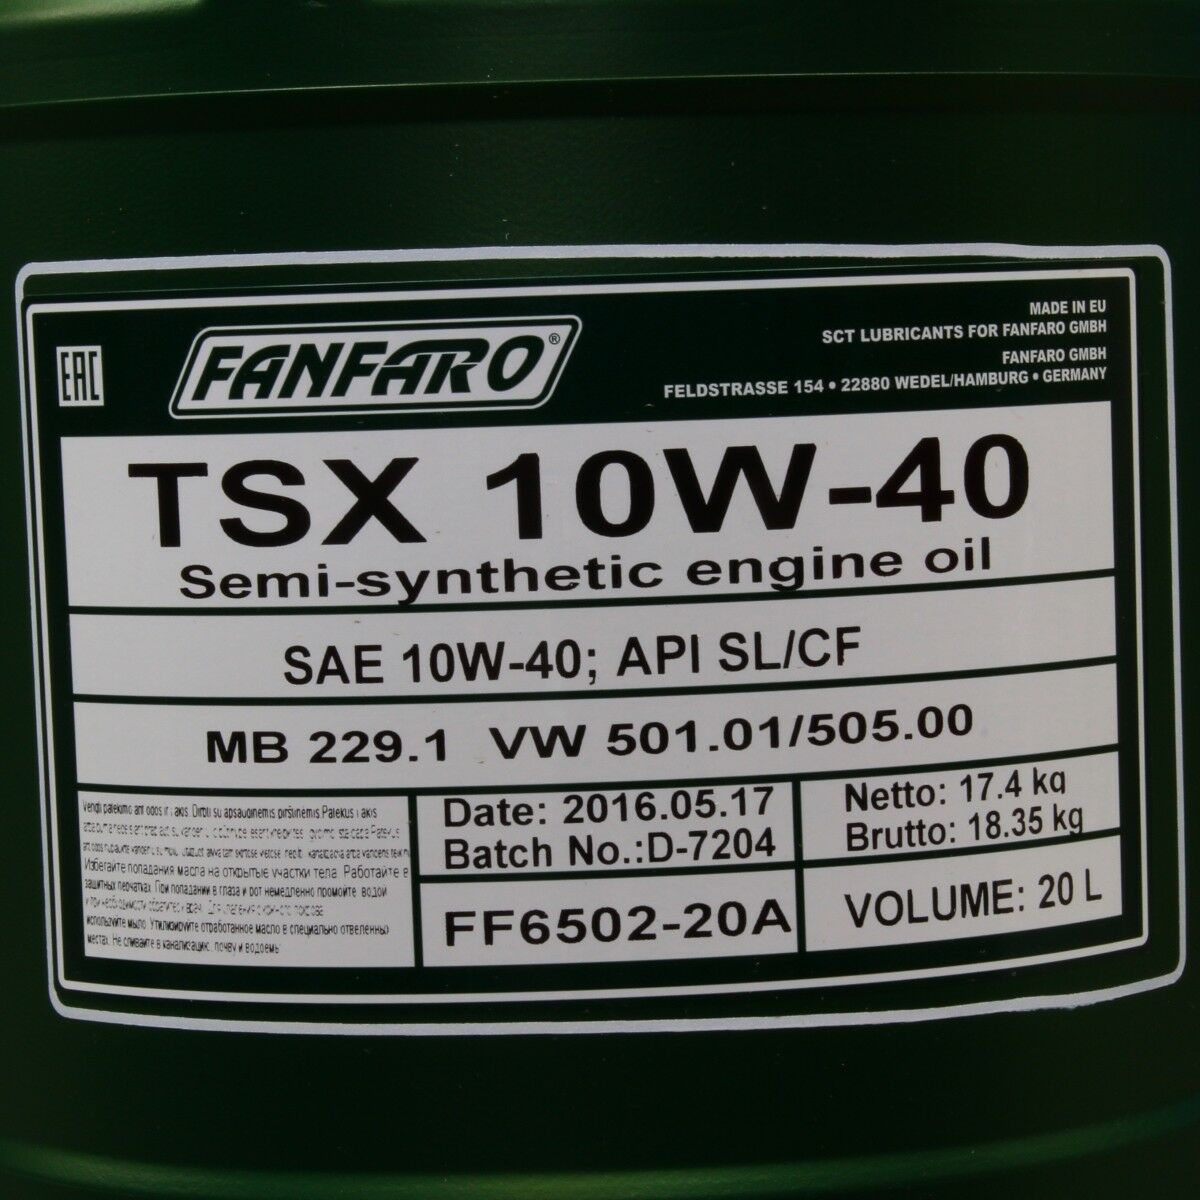 20 Liter FANFARO TSX 10W-40 SN Motoröl MB 229.1 VW 501.01 505.00 Economy-Class